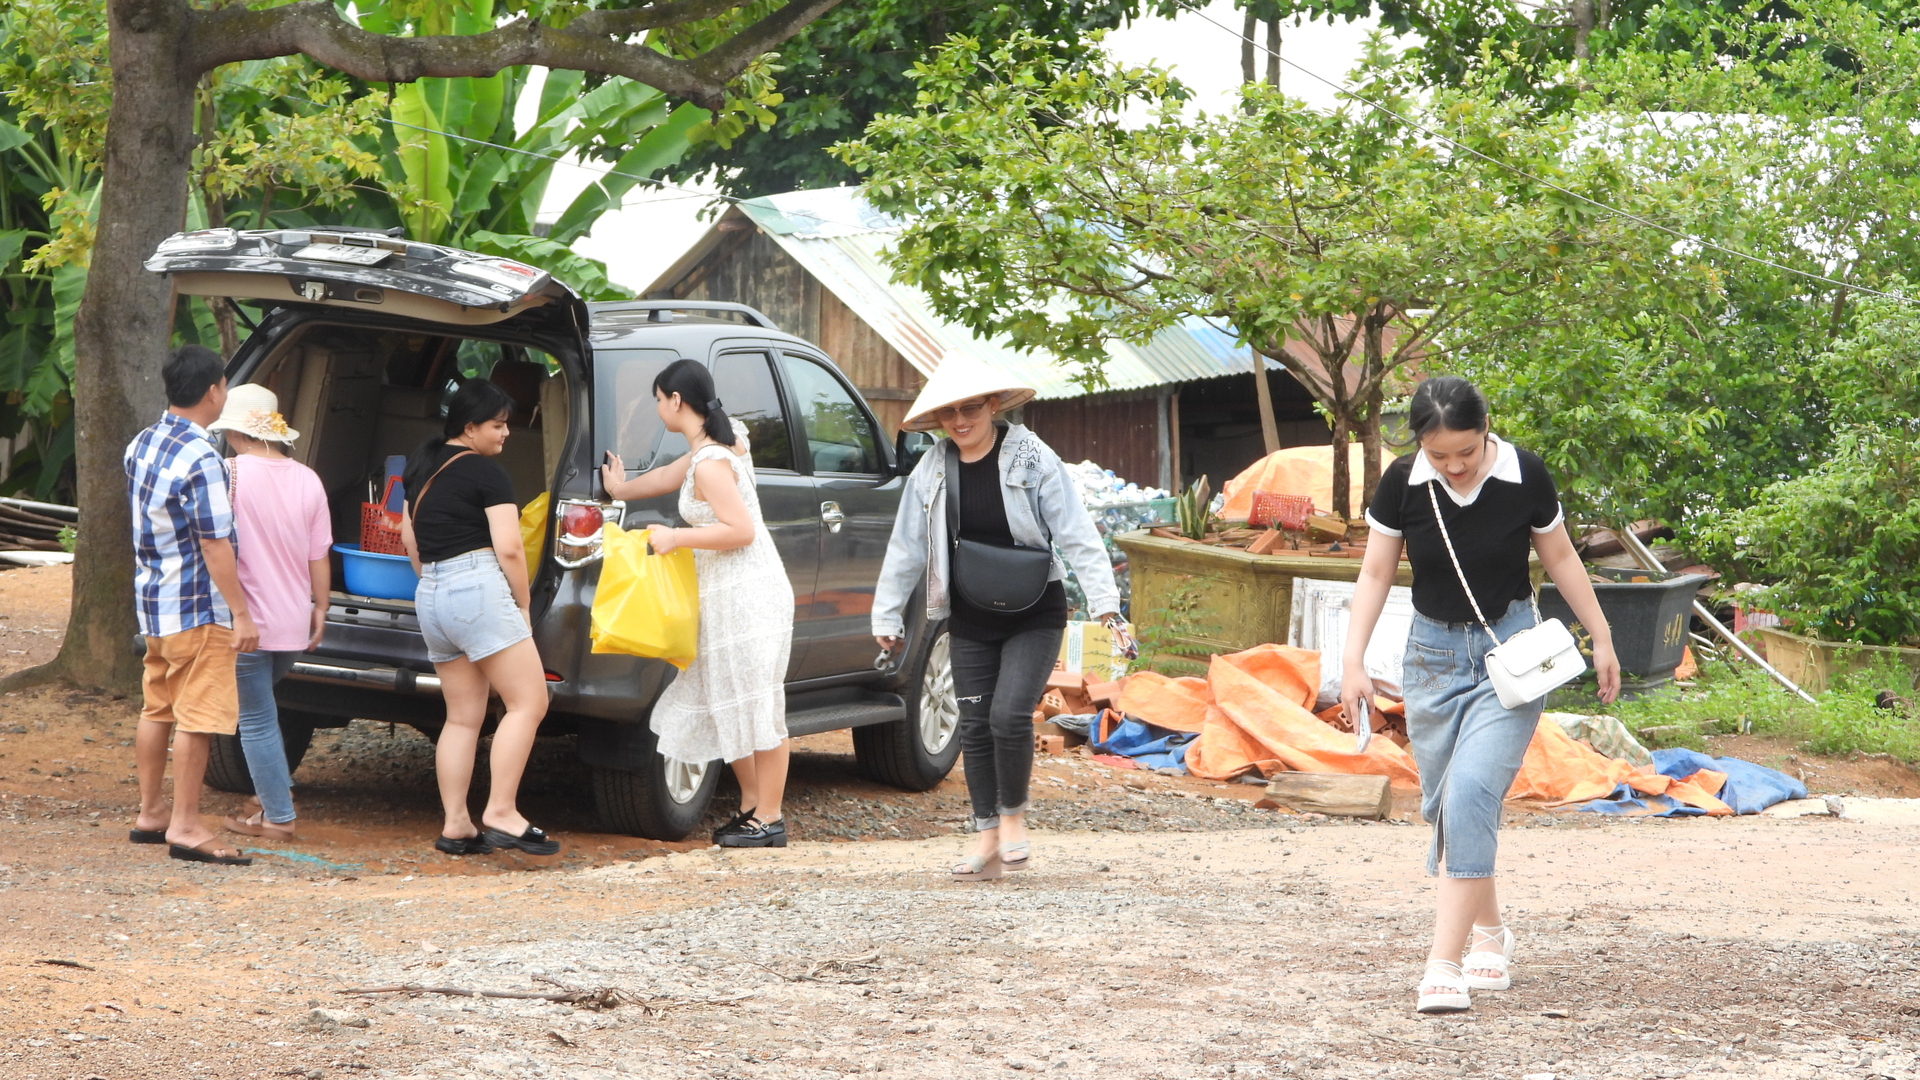 Sau khi tham quan nhà bè, du khách còn mua các sản vật như cá khô tại địa phương về làm quà. Ảnh: Trần Trung.